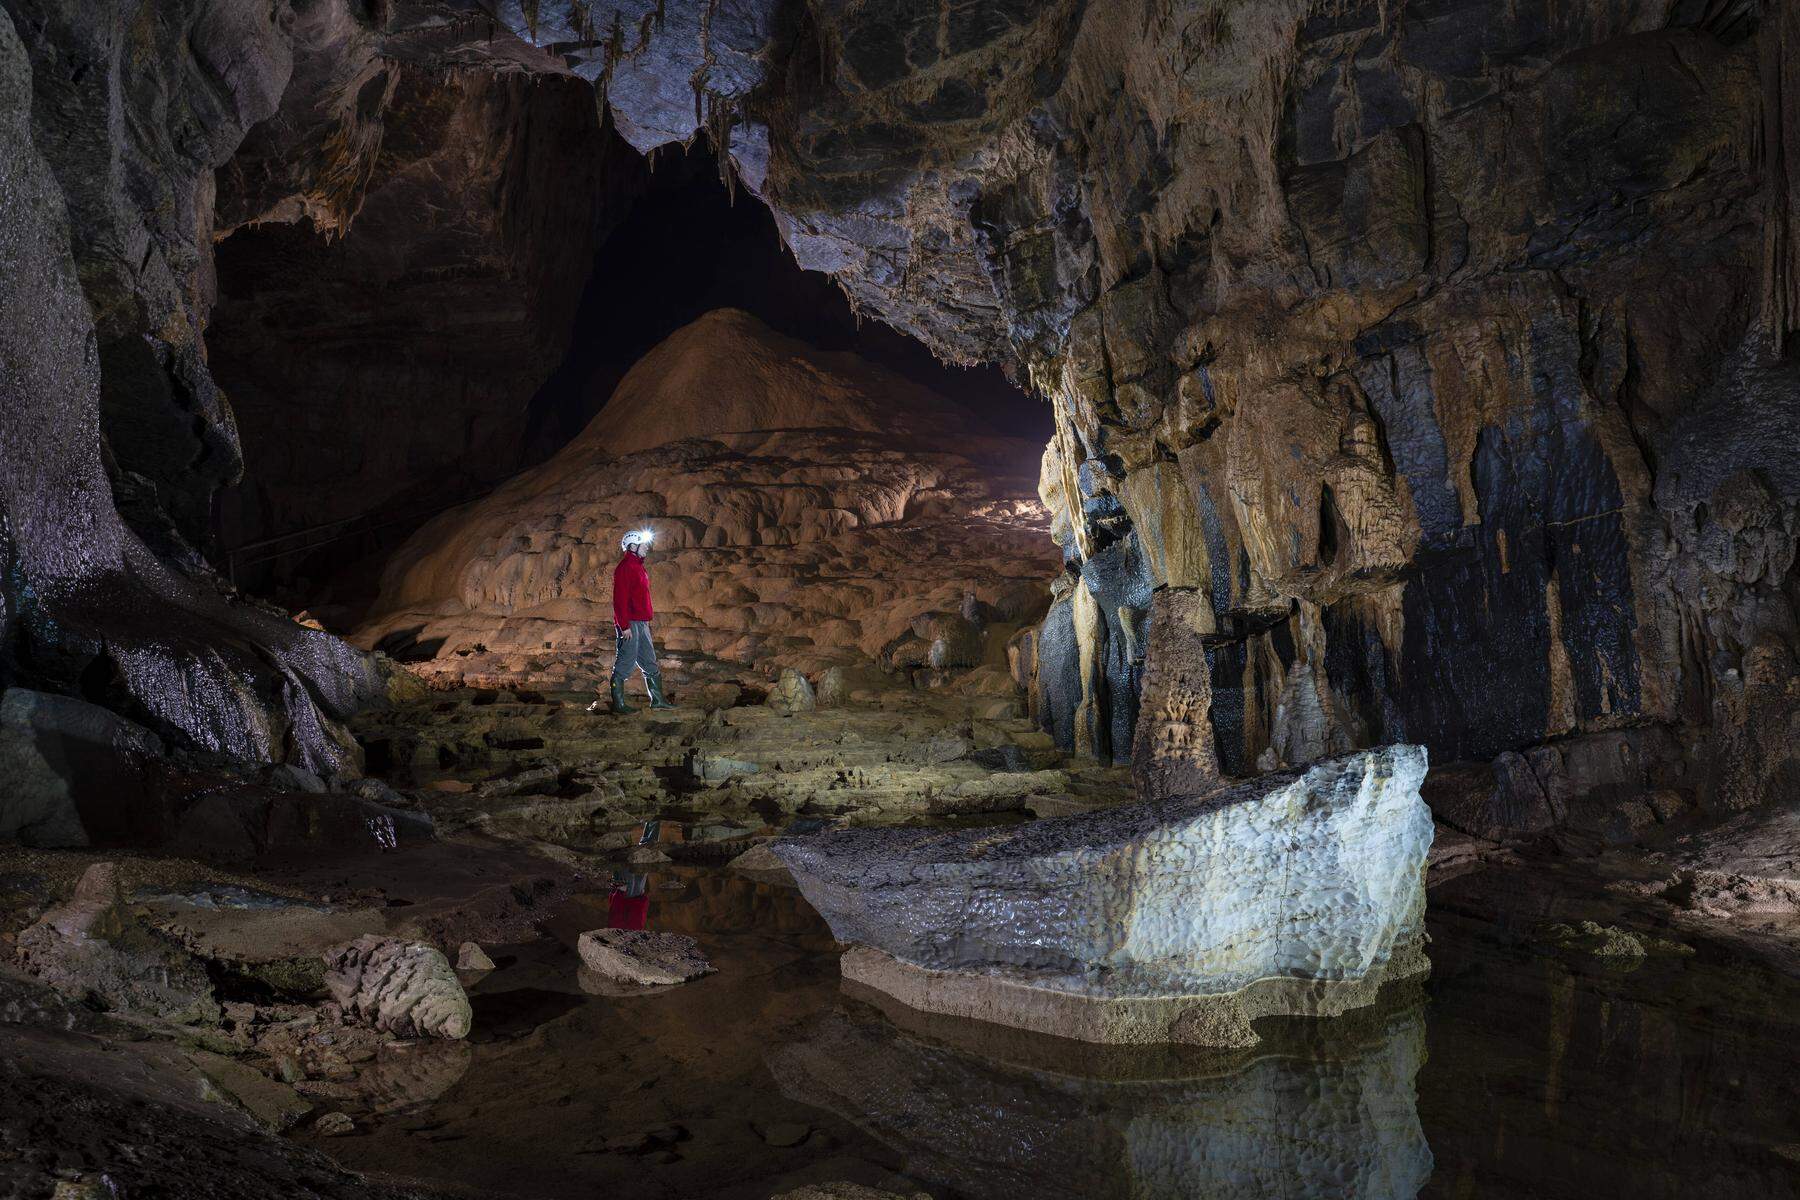 Sitzen seit Samstag fest | Bangen um drei Touristen und zwei Führer in slowenischer Krizna-Höhle
 